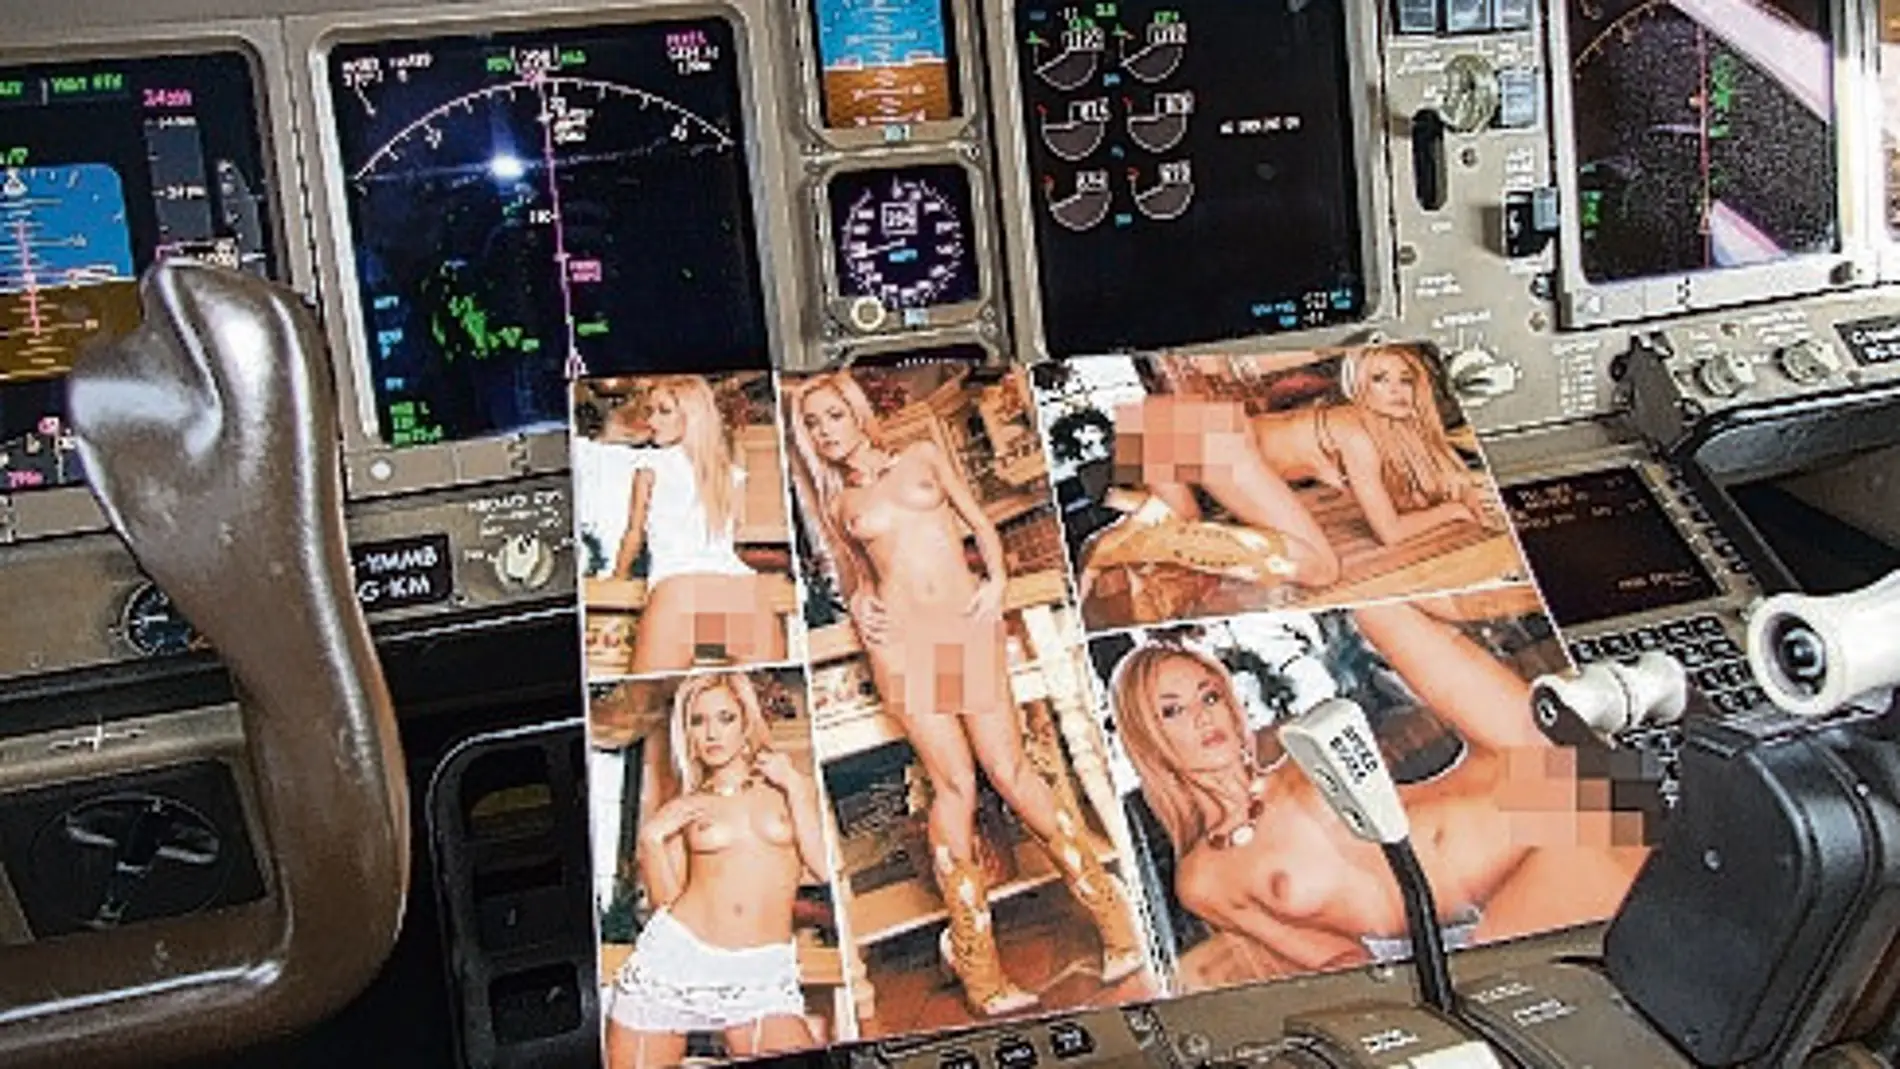 Revistas pornográficas sobre la cabina del avión